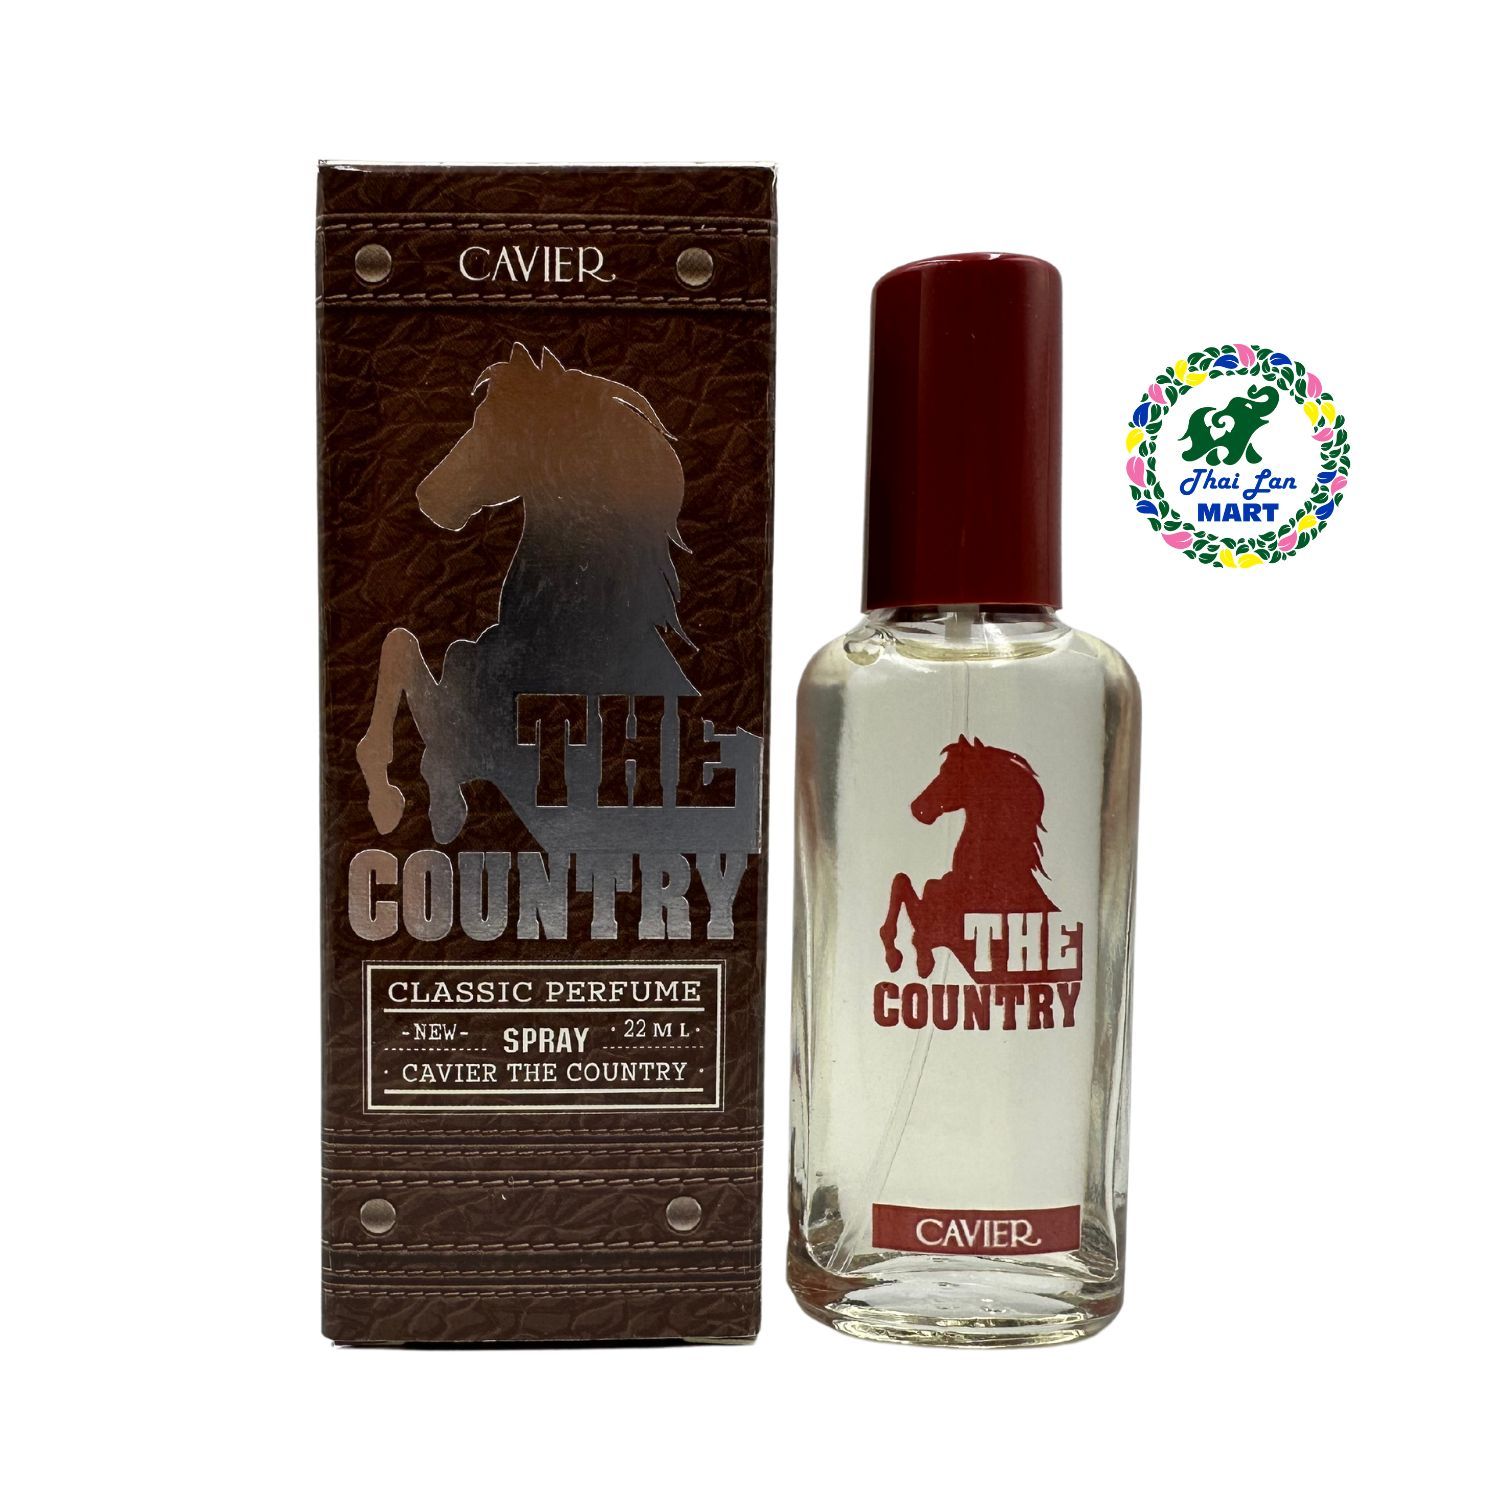  Nước hoa con ngựa cavier the country classic perfume hàng nội địa chính hãng thái lan 